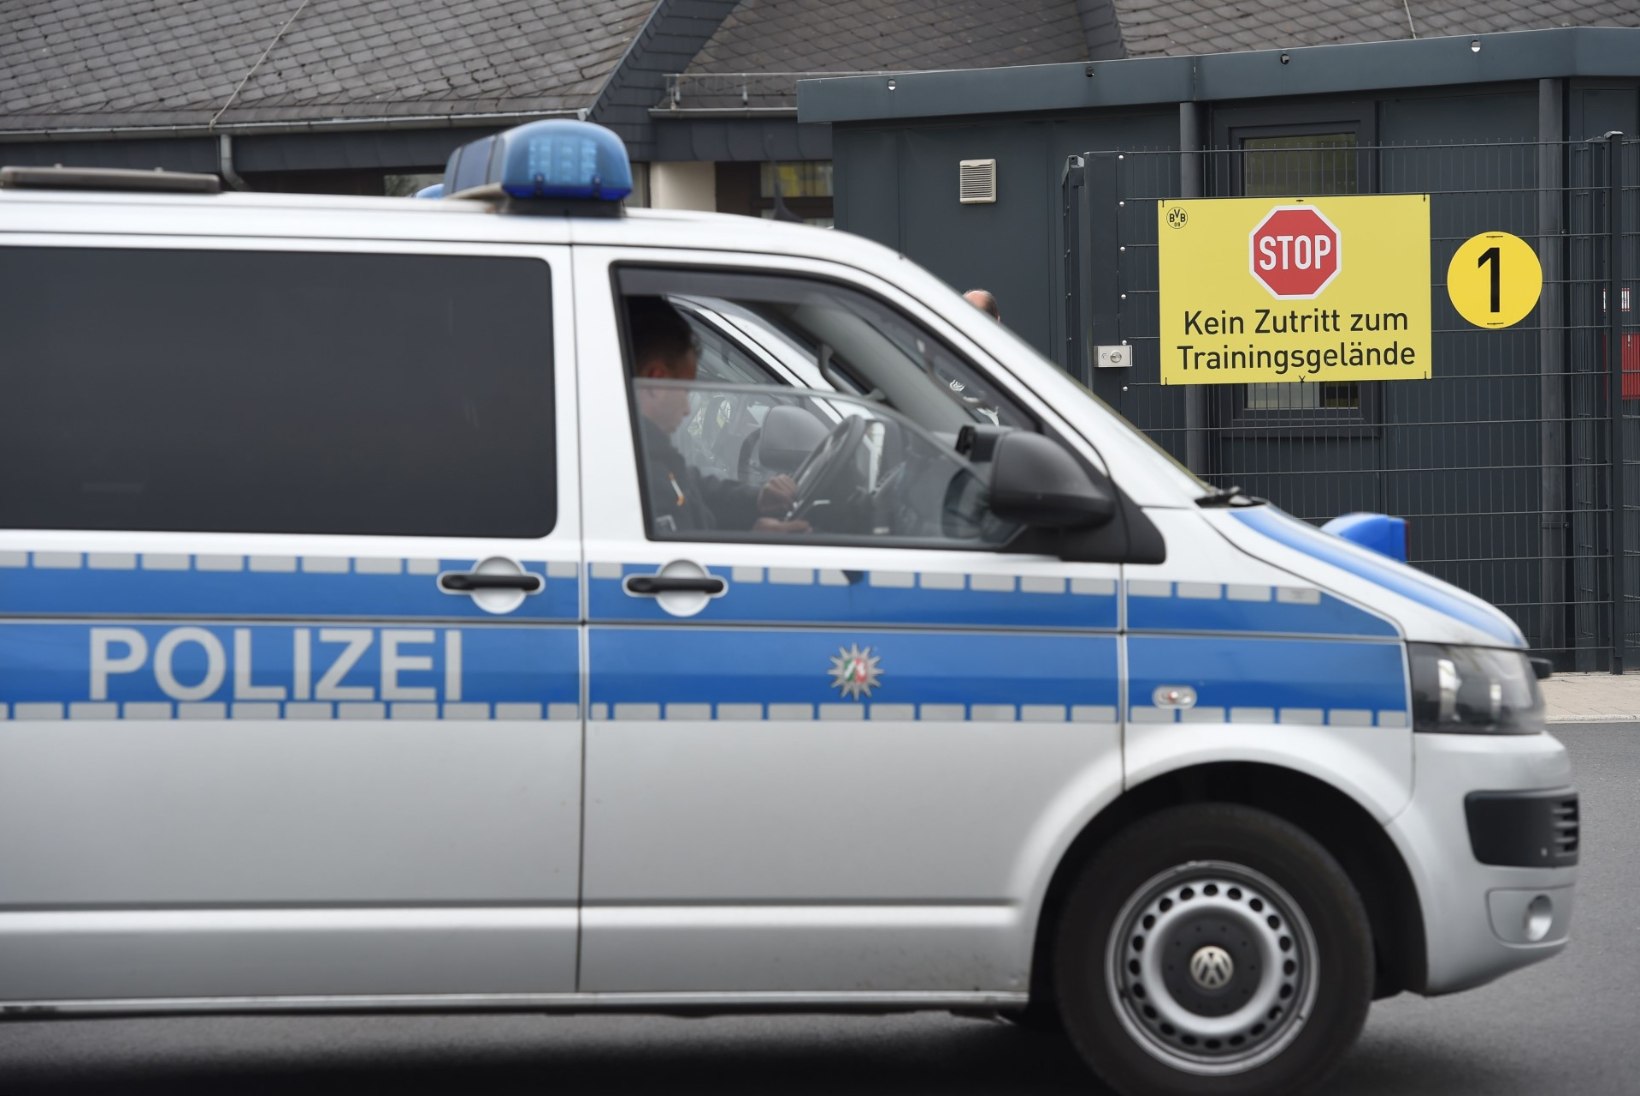 Eesti veokijuht peeti Saksamaal raske joobega sõitmise pärast kinni